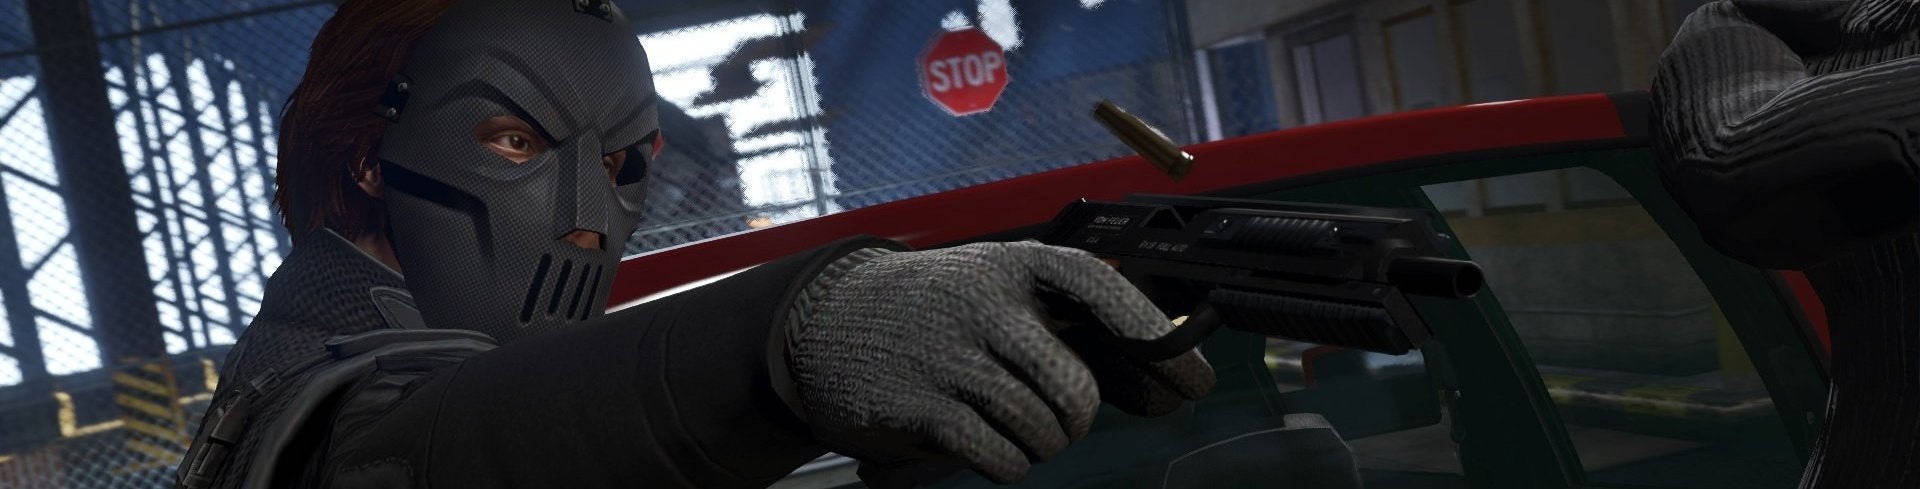 Afbeeldingen van GTA Online Heists aangekondigd met officiële trailer